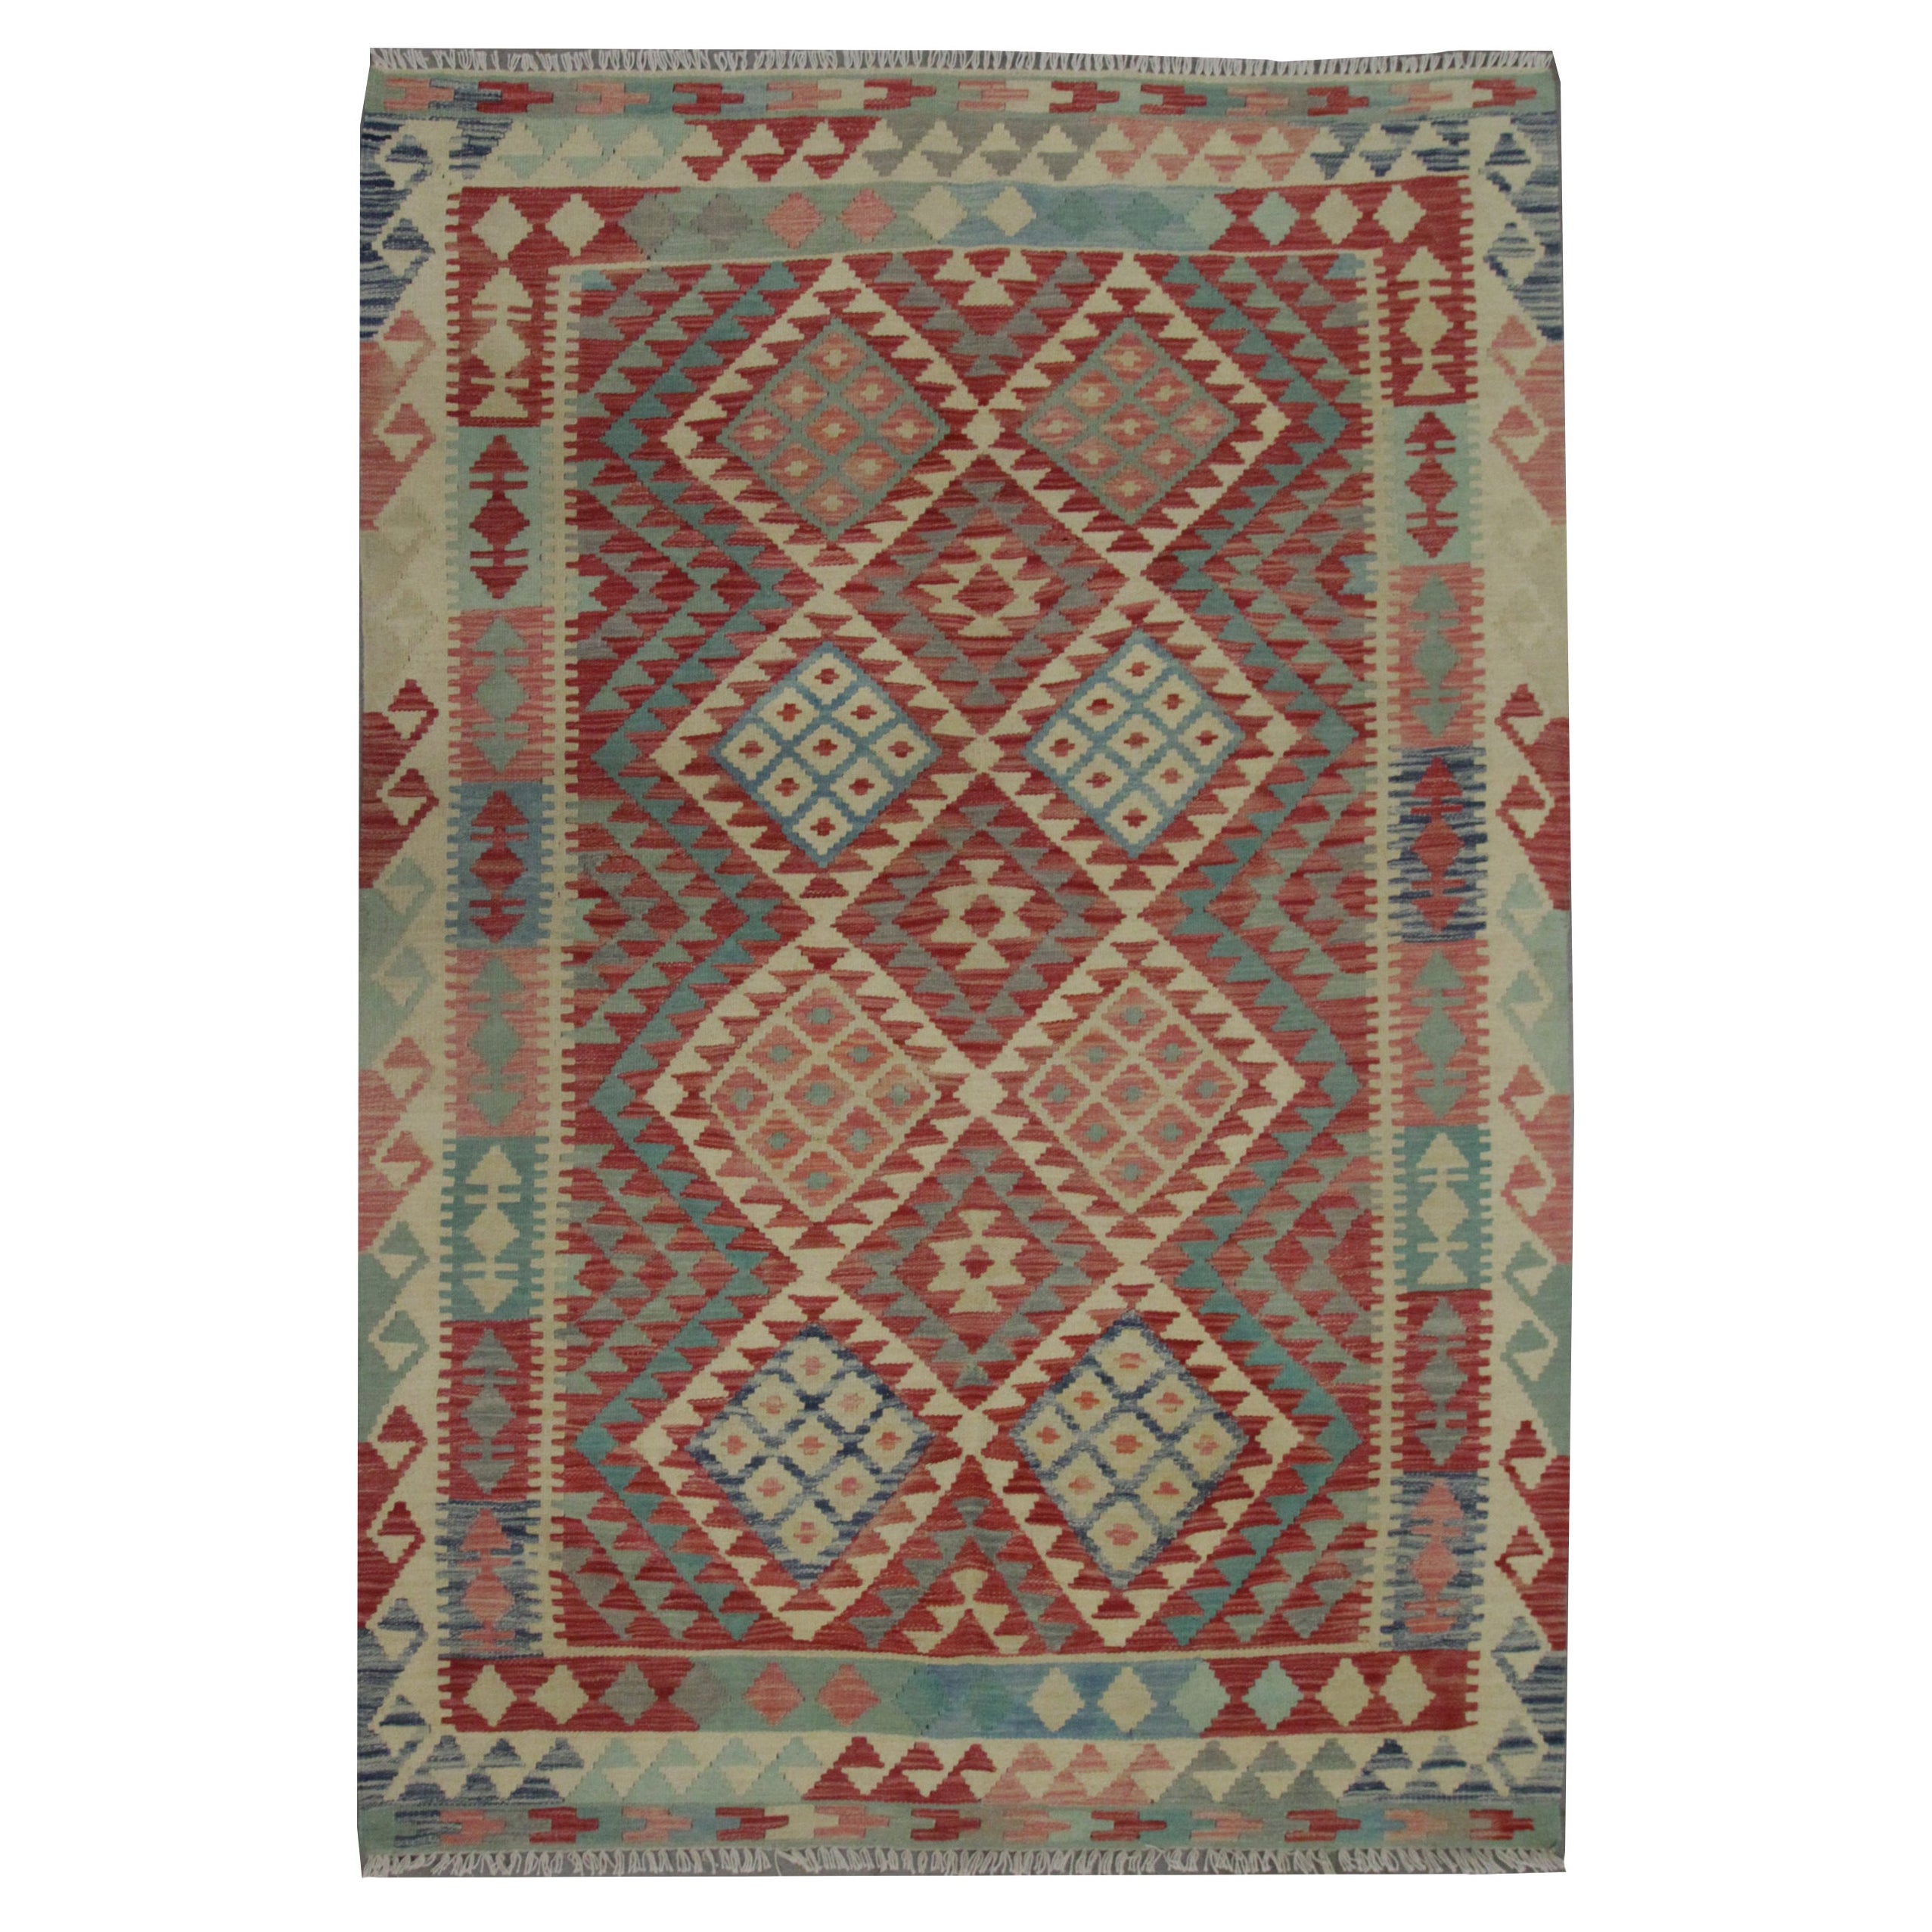 Handmade Kilim Rug Vibrant Geometric Carpet Modern Kilim Rug Wool Area Rug